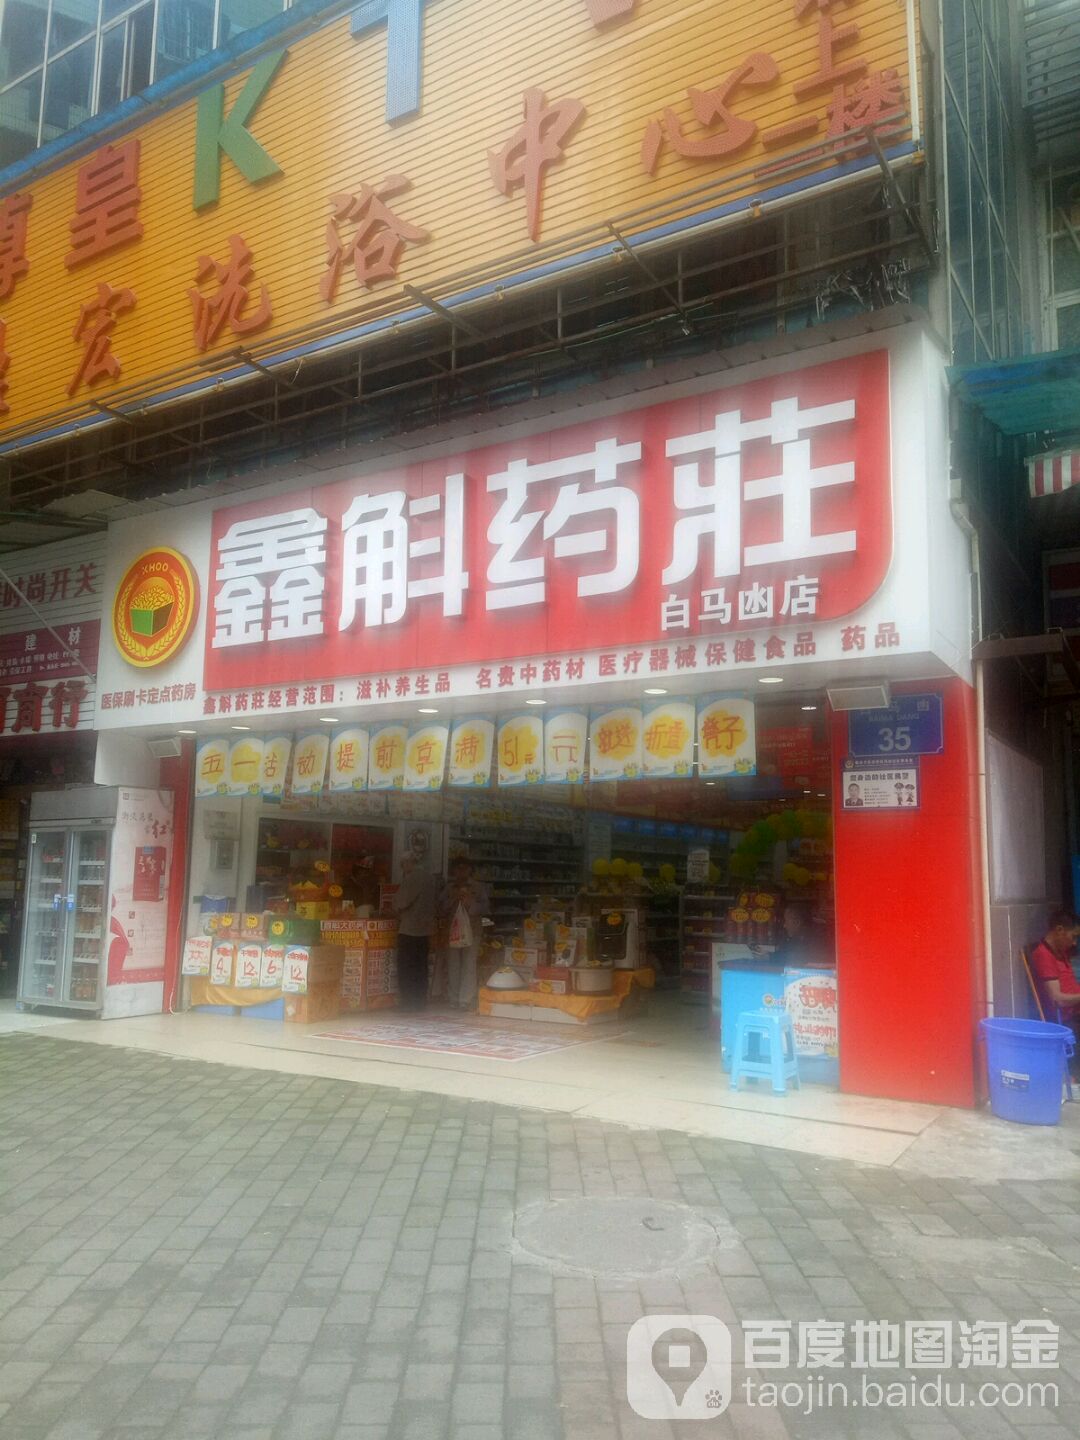 鑫斛药庄(石小路菜市场店)